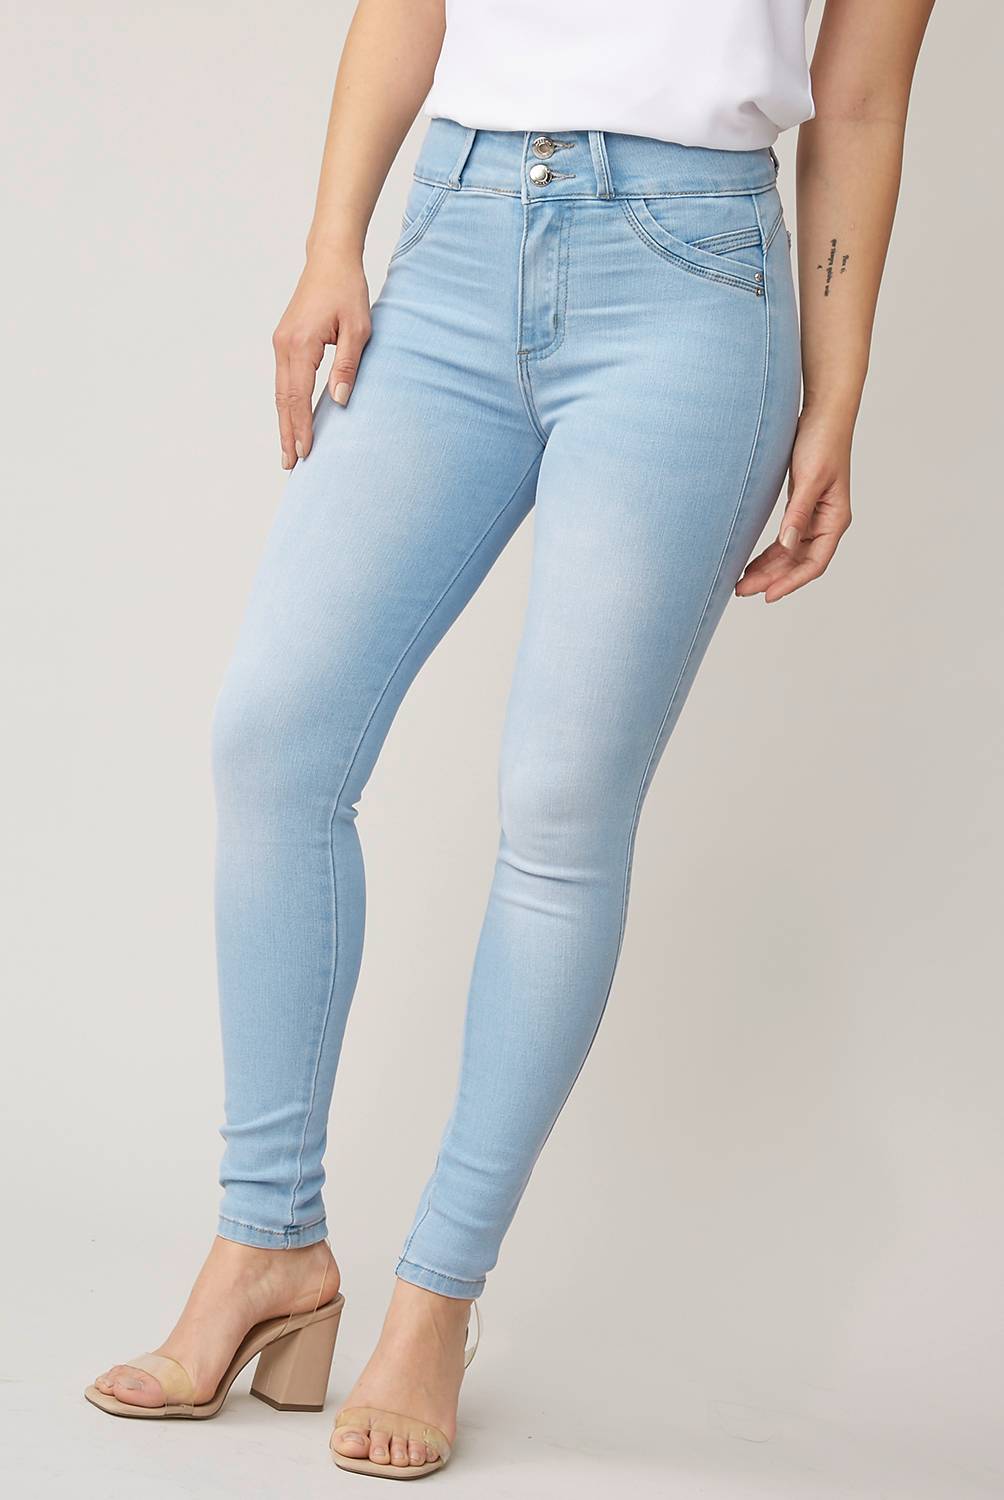 MOSSIMO - Jeans Skinny Tiro Alto Mujer Mossimo